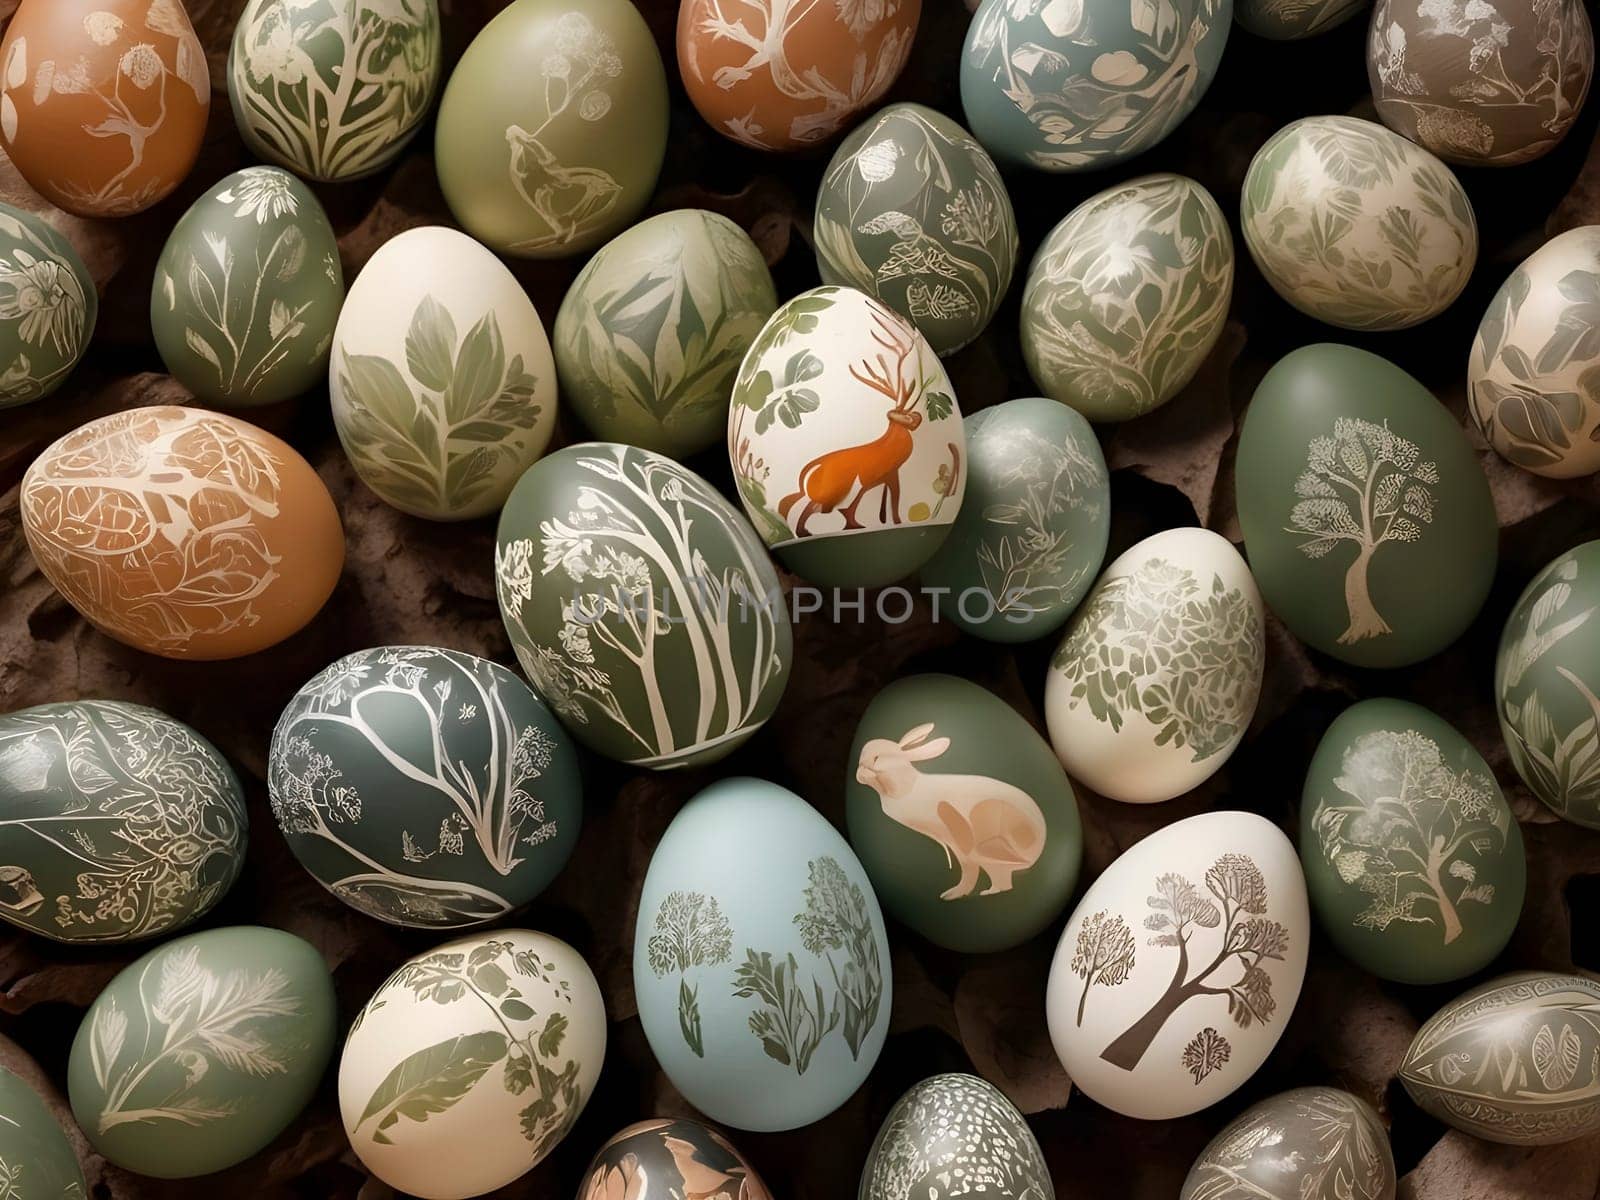 Wildlife Wonders: Egg Art Celebrating Endangered Animals and Ecology by mailos